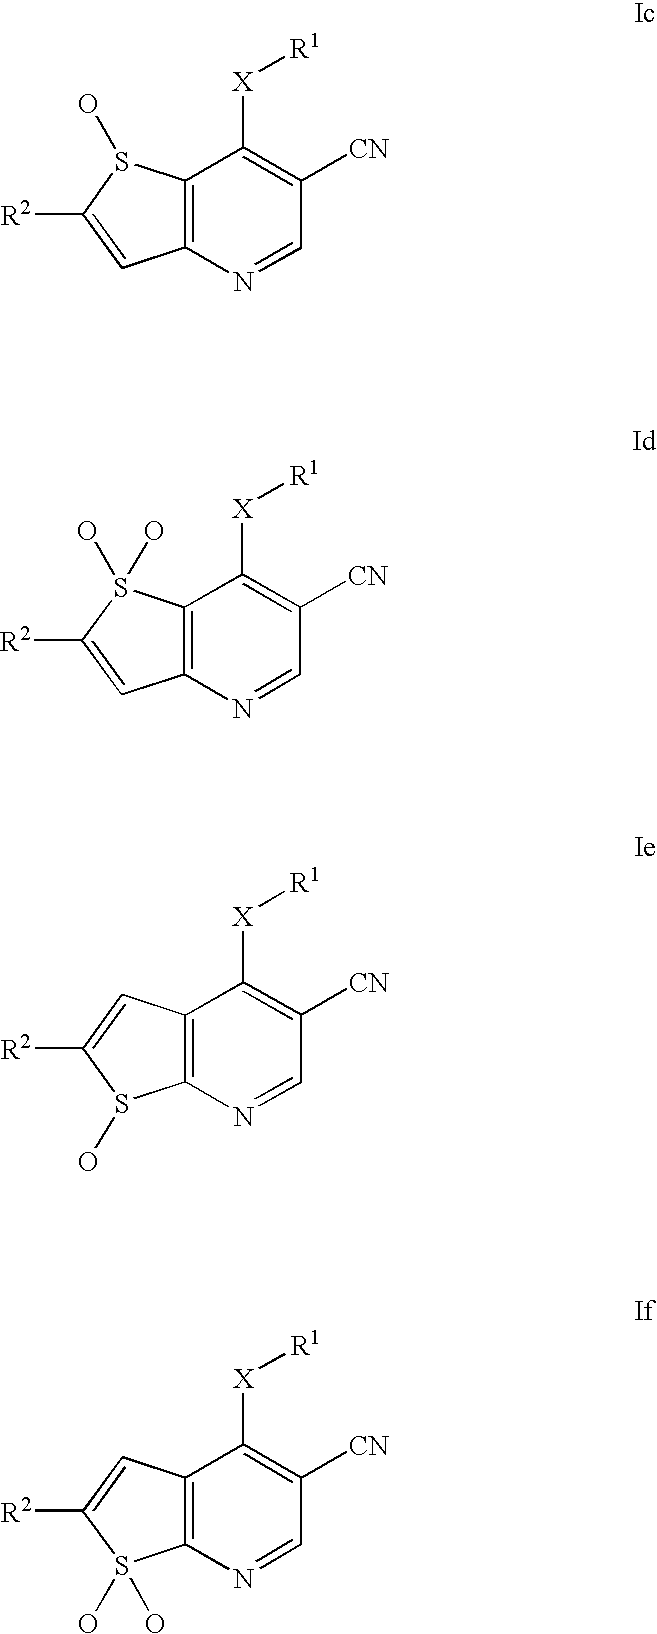 Thieno[3,2-b]pyridine-6-carbonitriles and thieno[2,3-b]pyridine-5-carbonitriles as protein kinase inhibitors